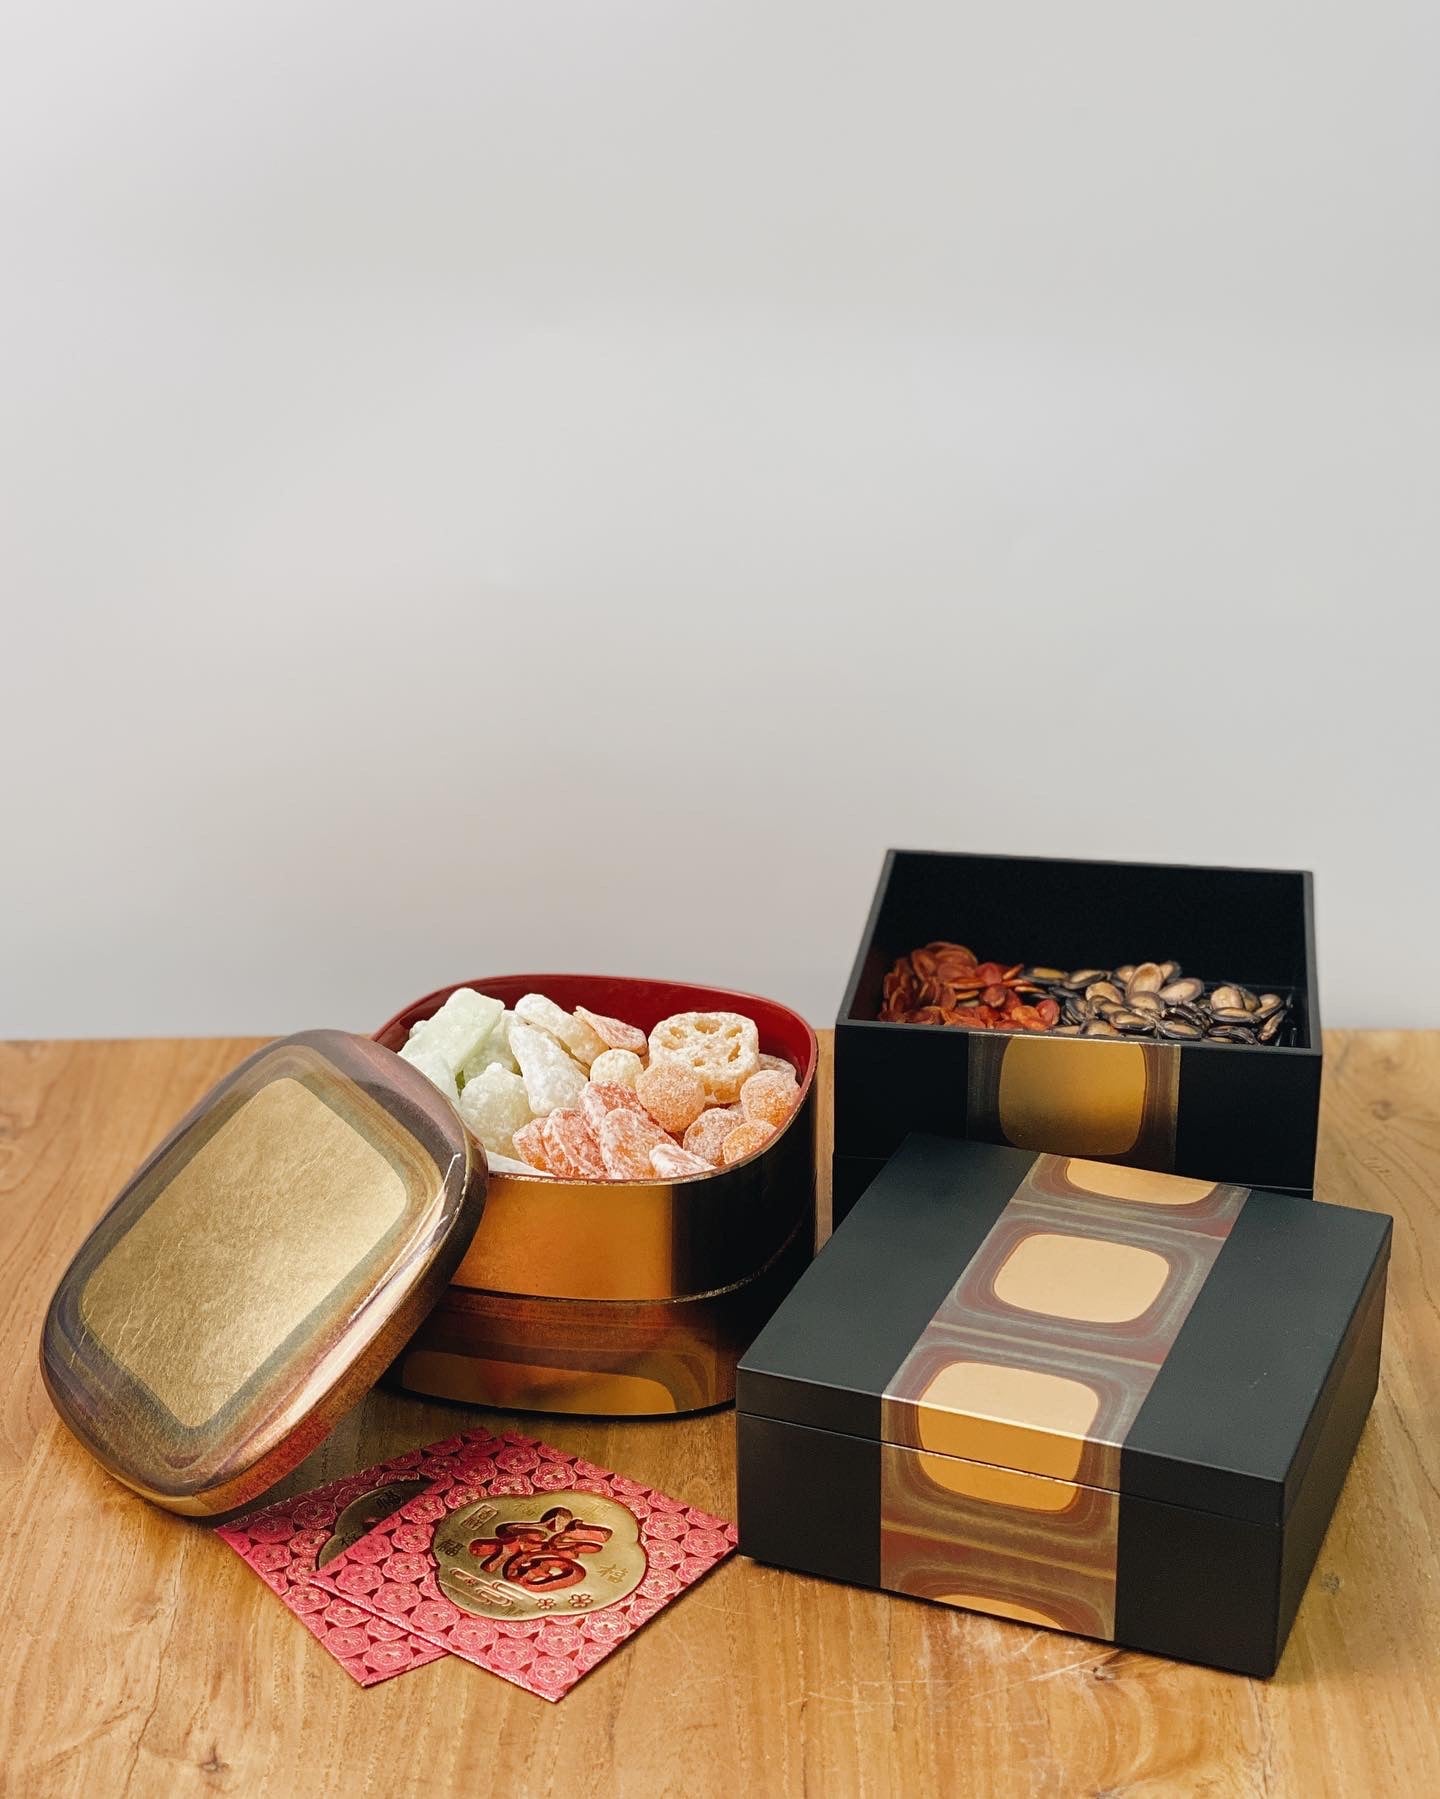 日本製 金澤古箔三層盒 | Made in Japan Hakuichi Ancient Foil Three-layer Box